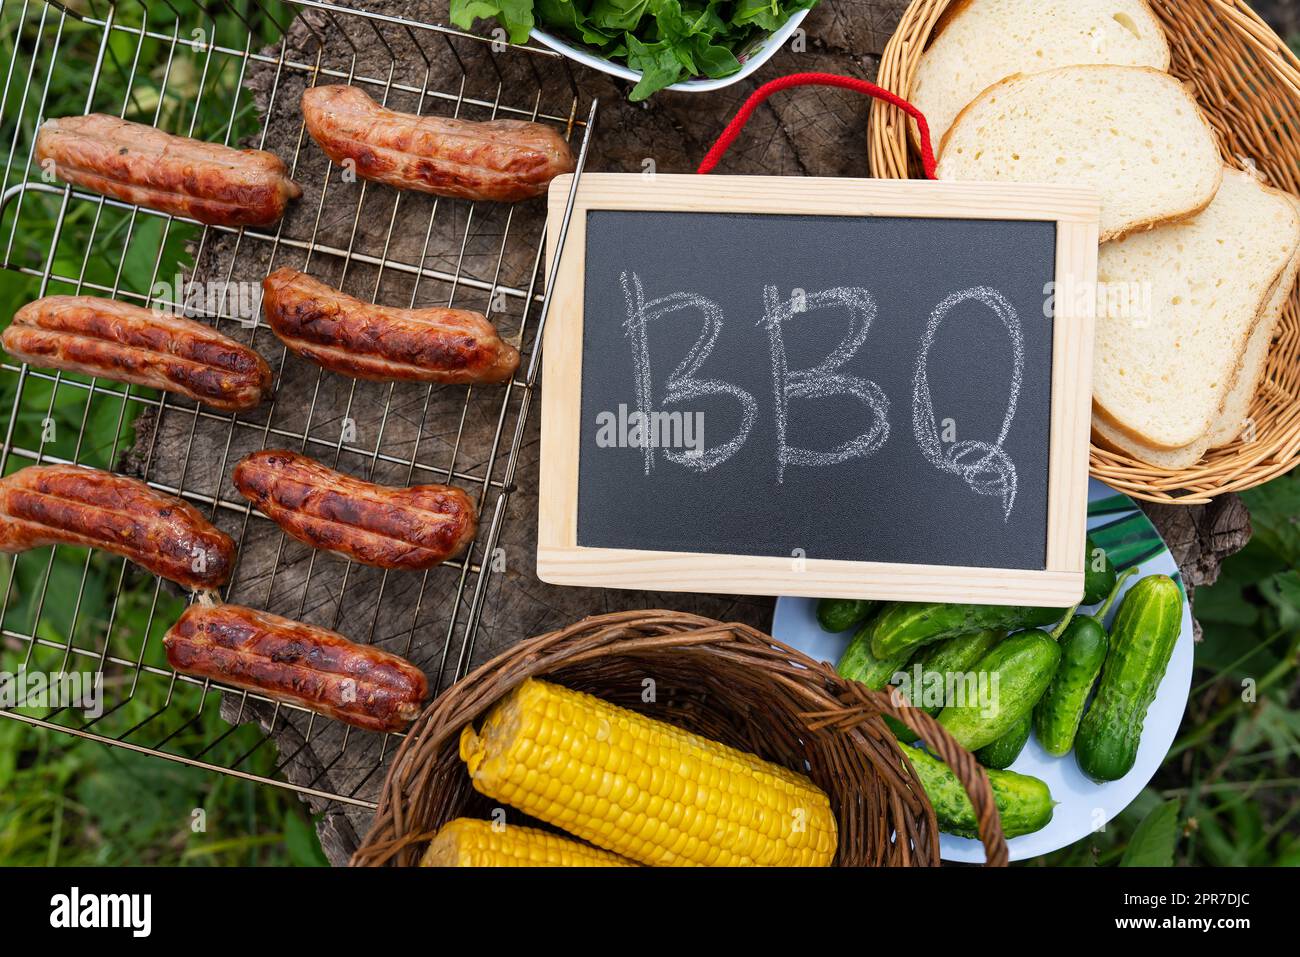 Barbecue-Aufschrift auf der Tafel, gegrillte Würstchen, Mais, Brot. Freizeitaktivitäten im Freien. Stockfoto